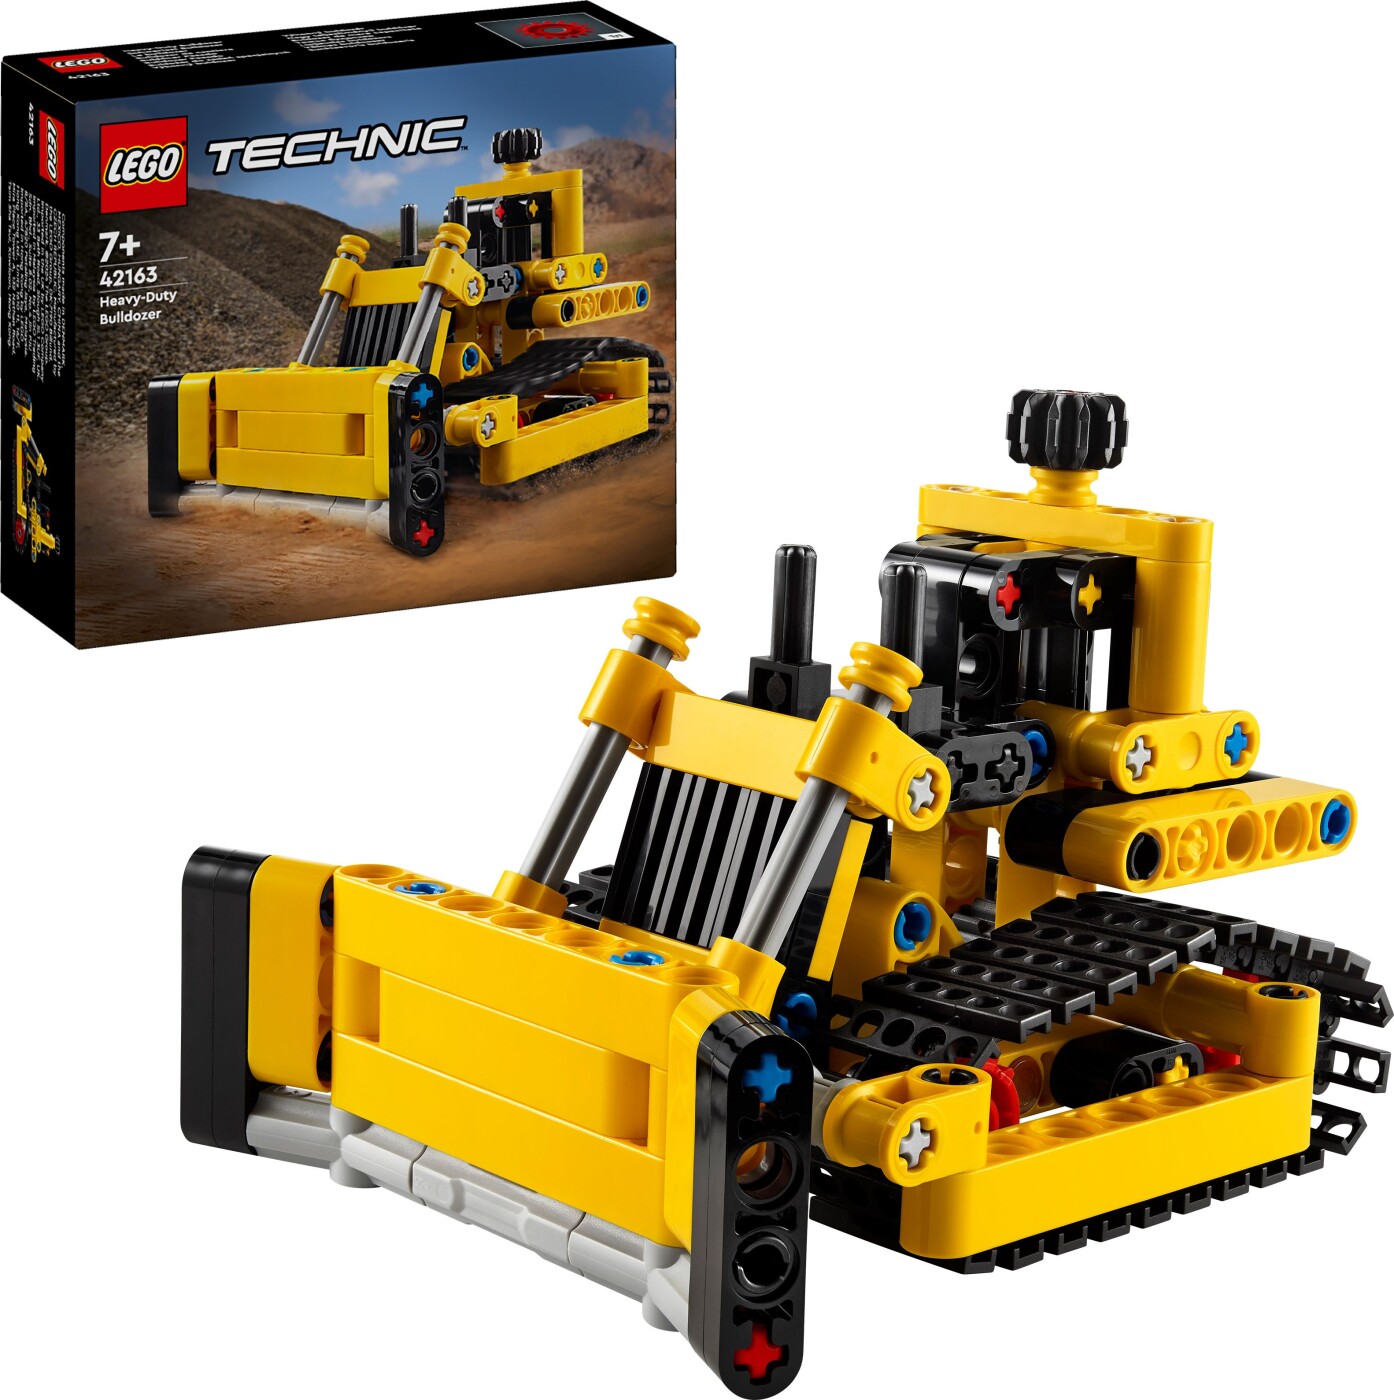 Billede af Lego Technic - Stor Bulldozer - 42163